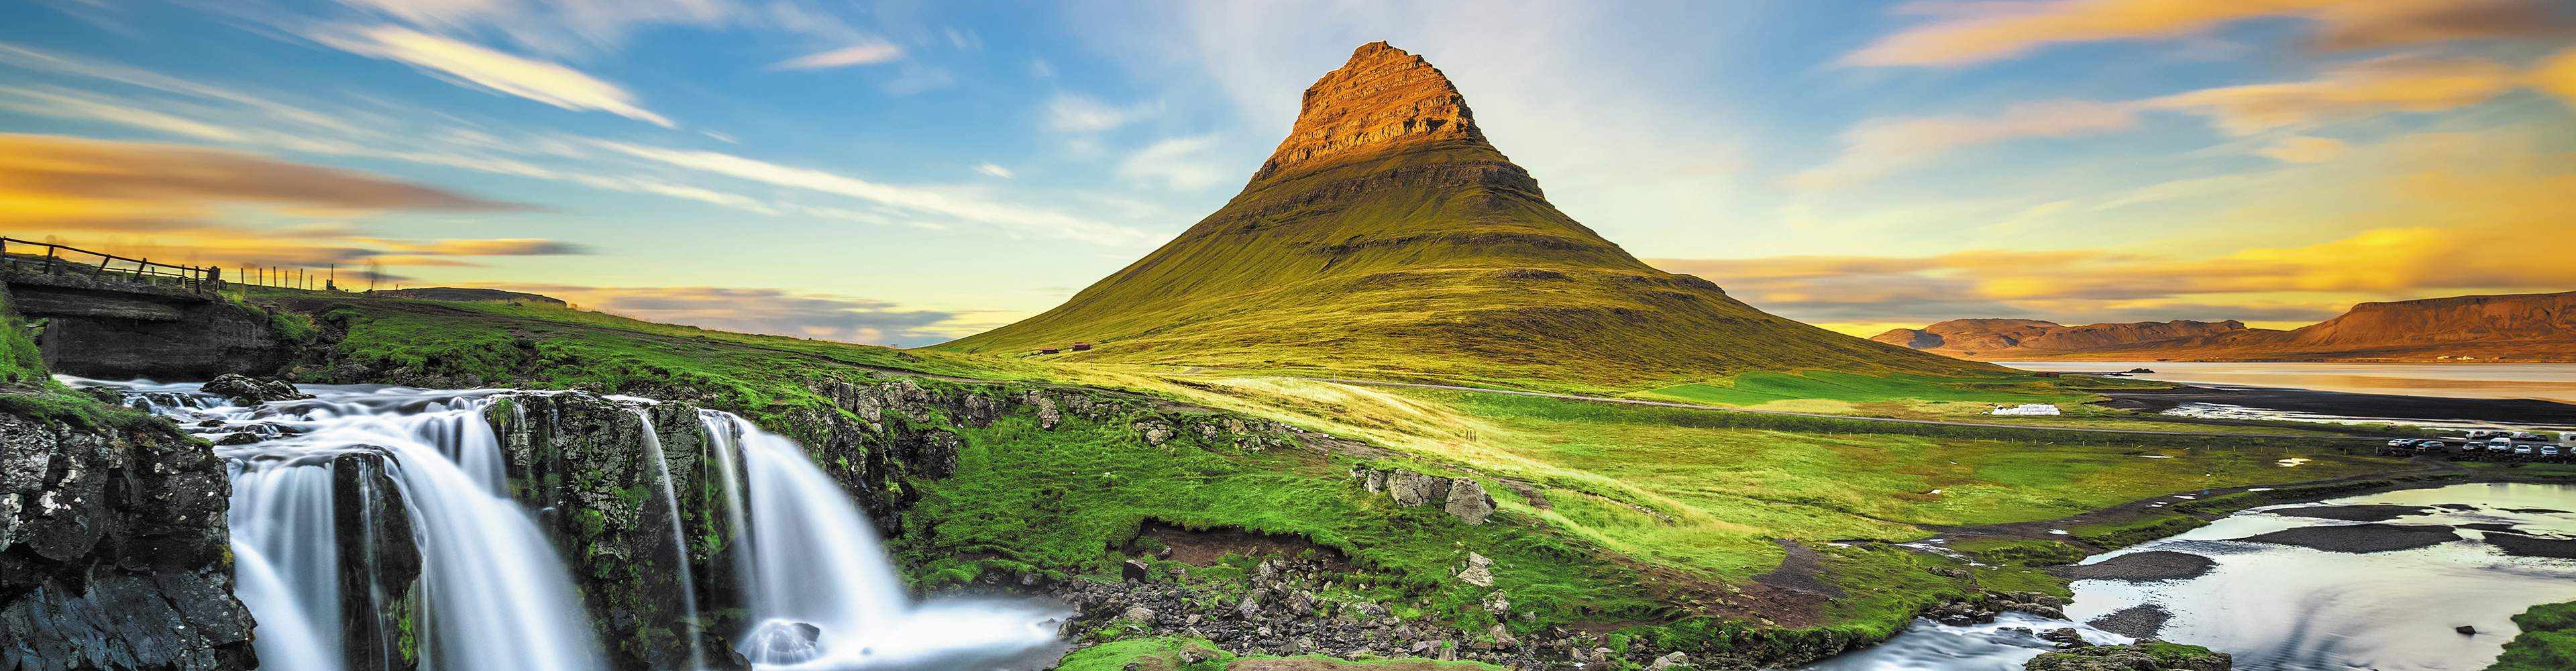 Cruising Iceland's Wild West Coast